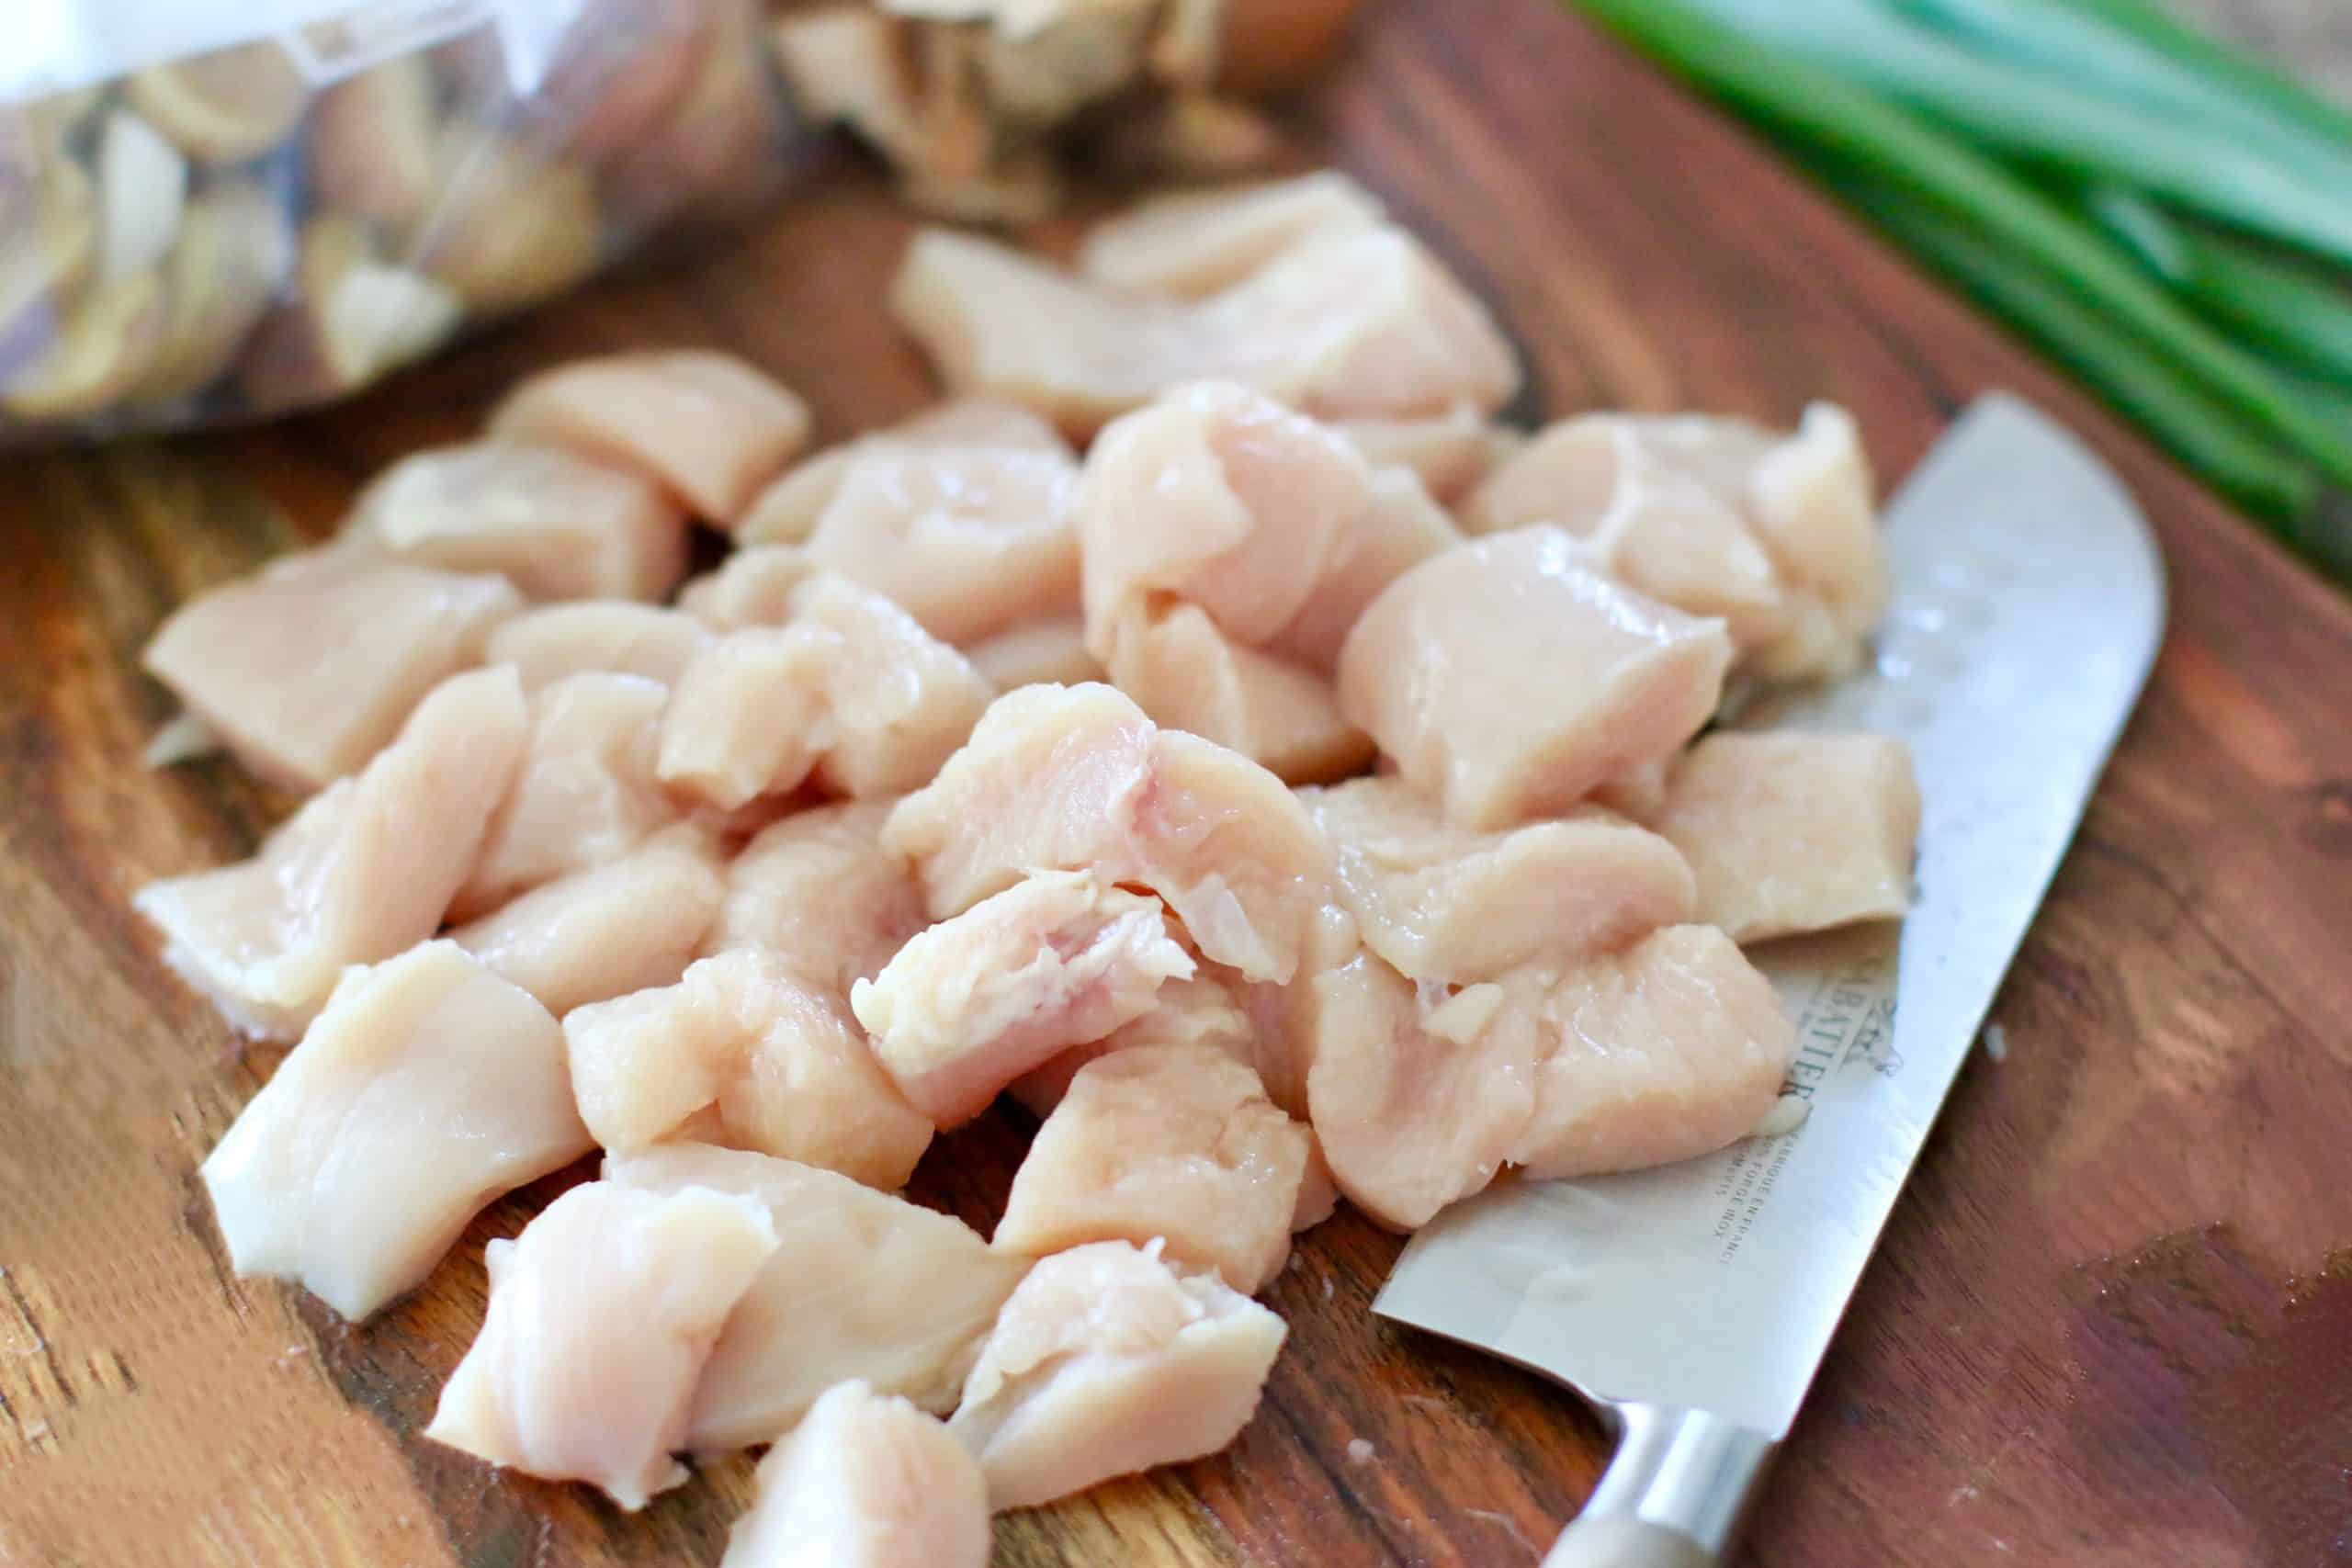 diced, fresh chicken breast on a cutting board.